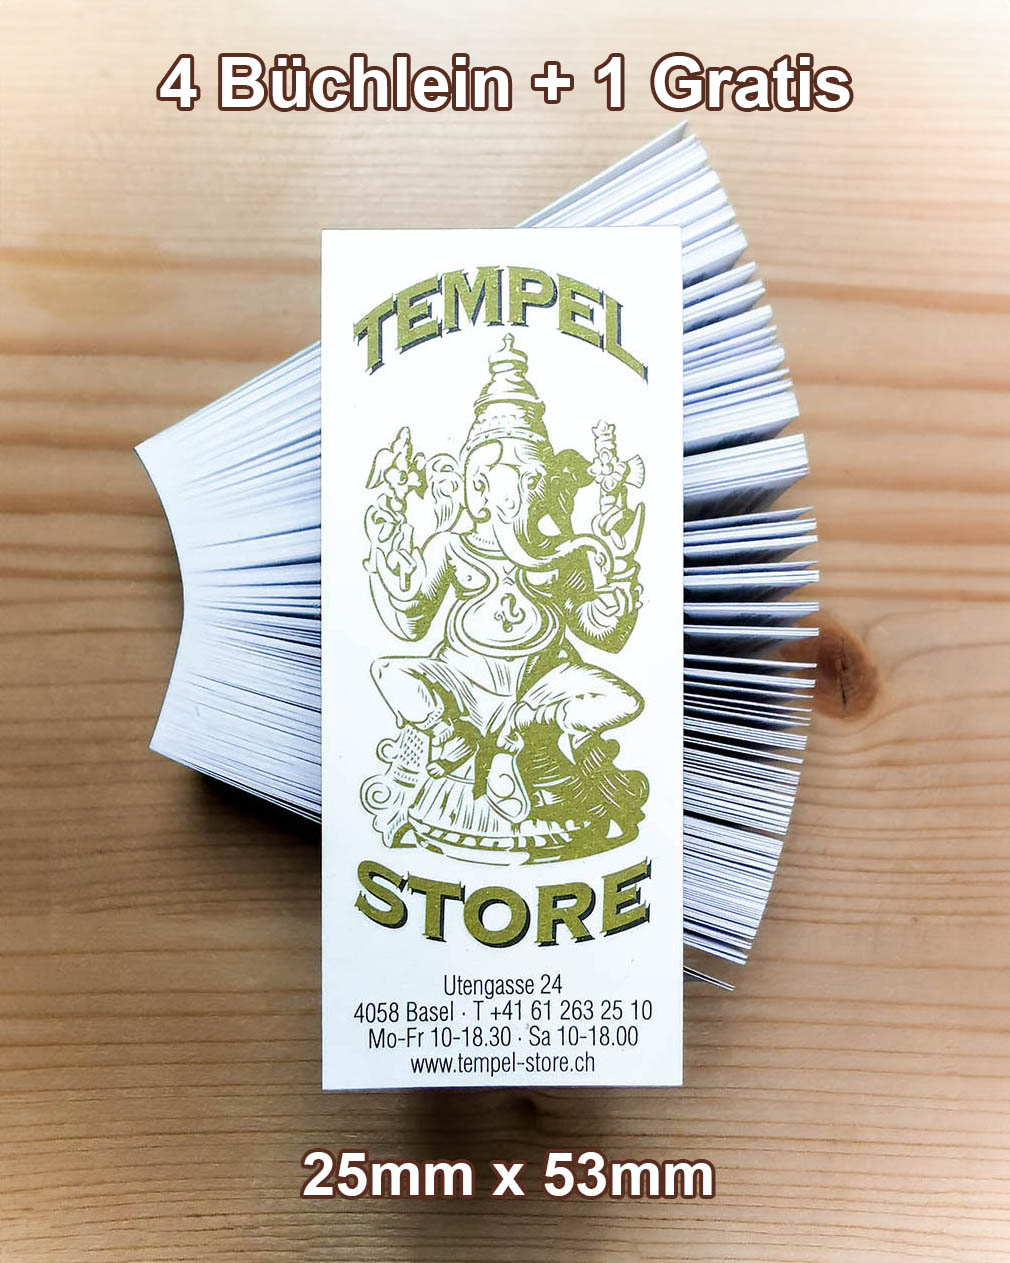 Tempel Store Filter schmal - 5 x 200 Blatt